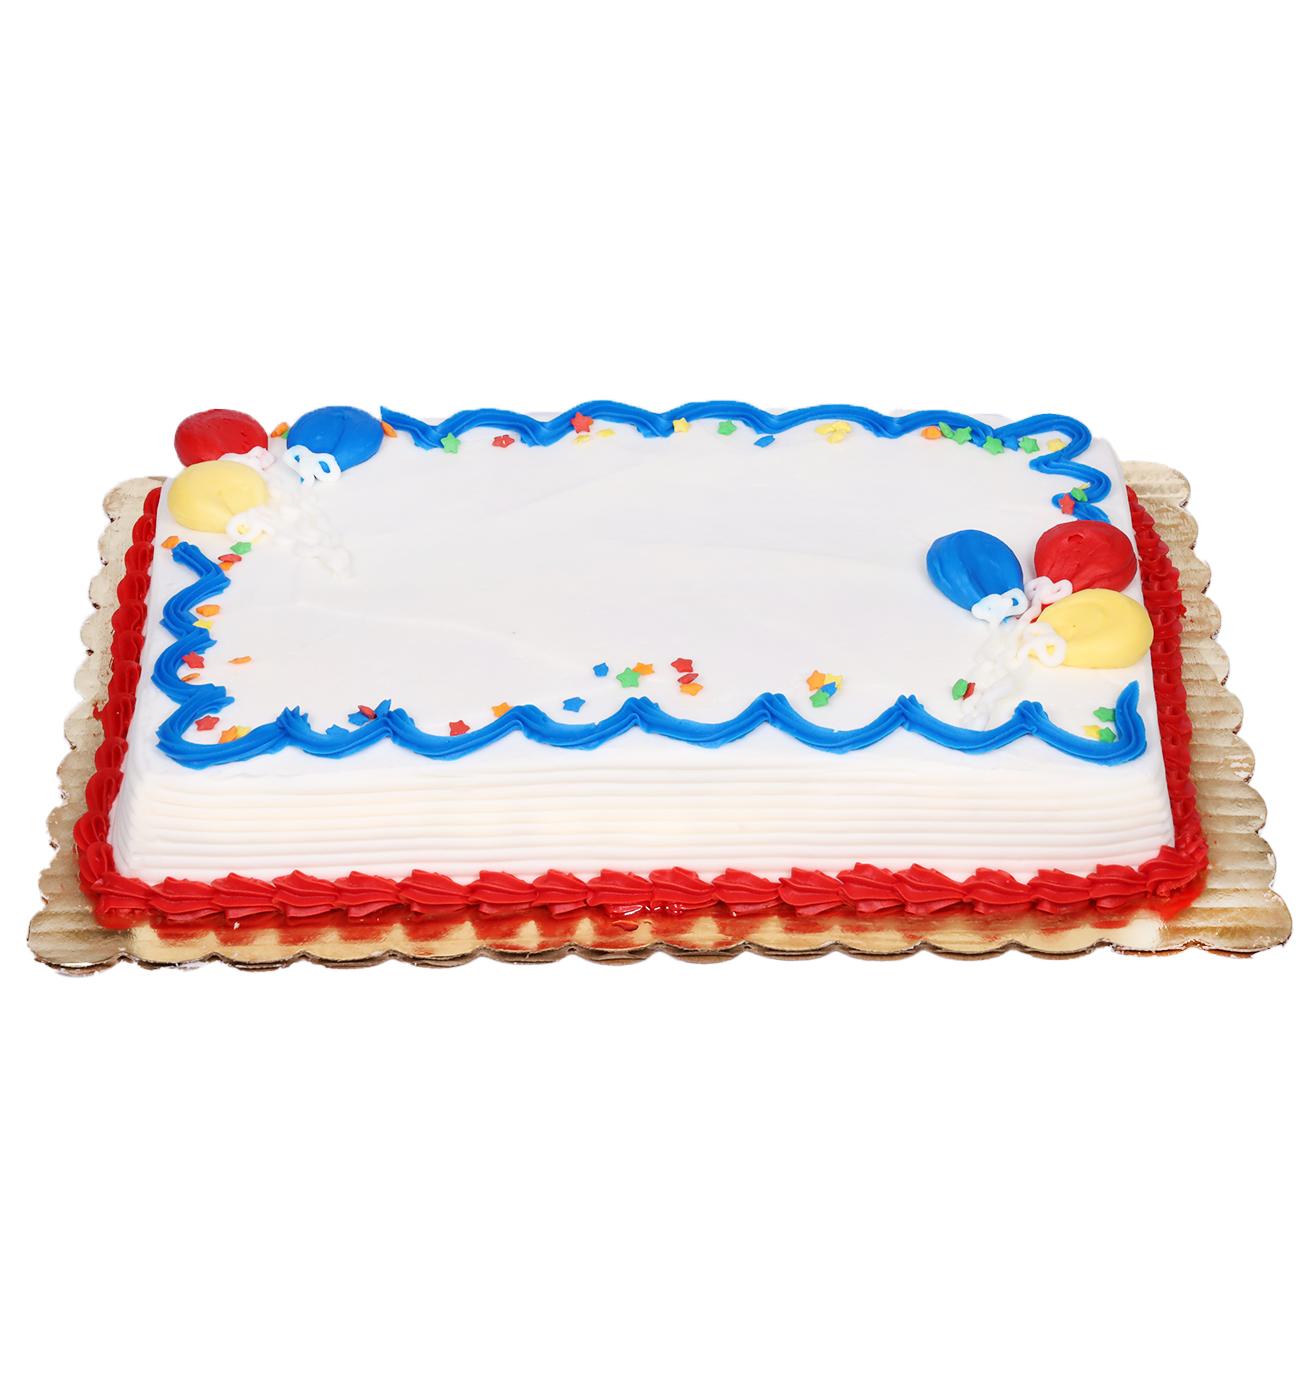 Baker Maid Balloon Celebration Buttercream White Cake; image 1 of 3